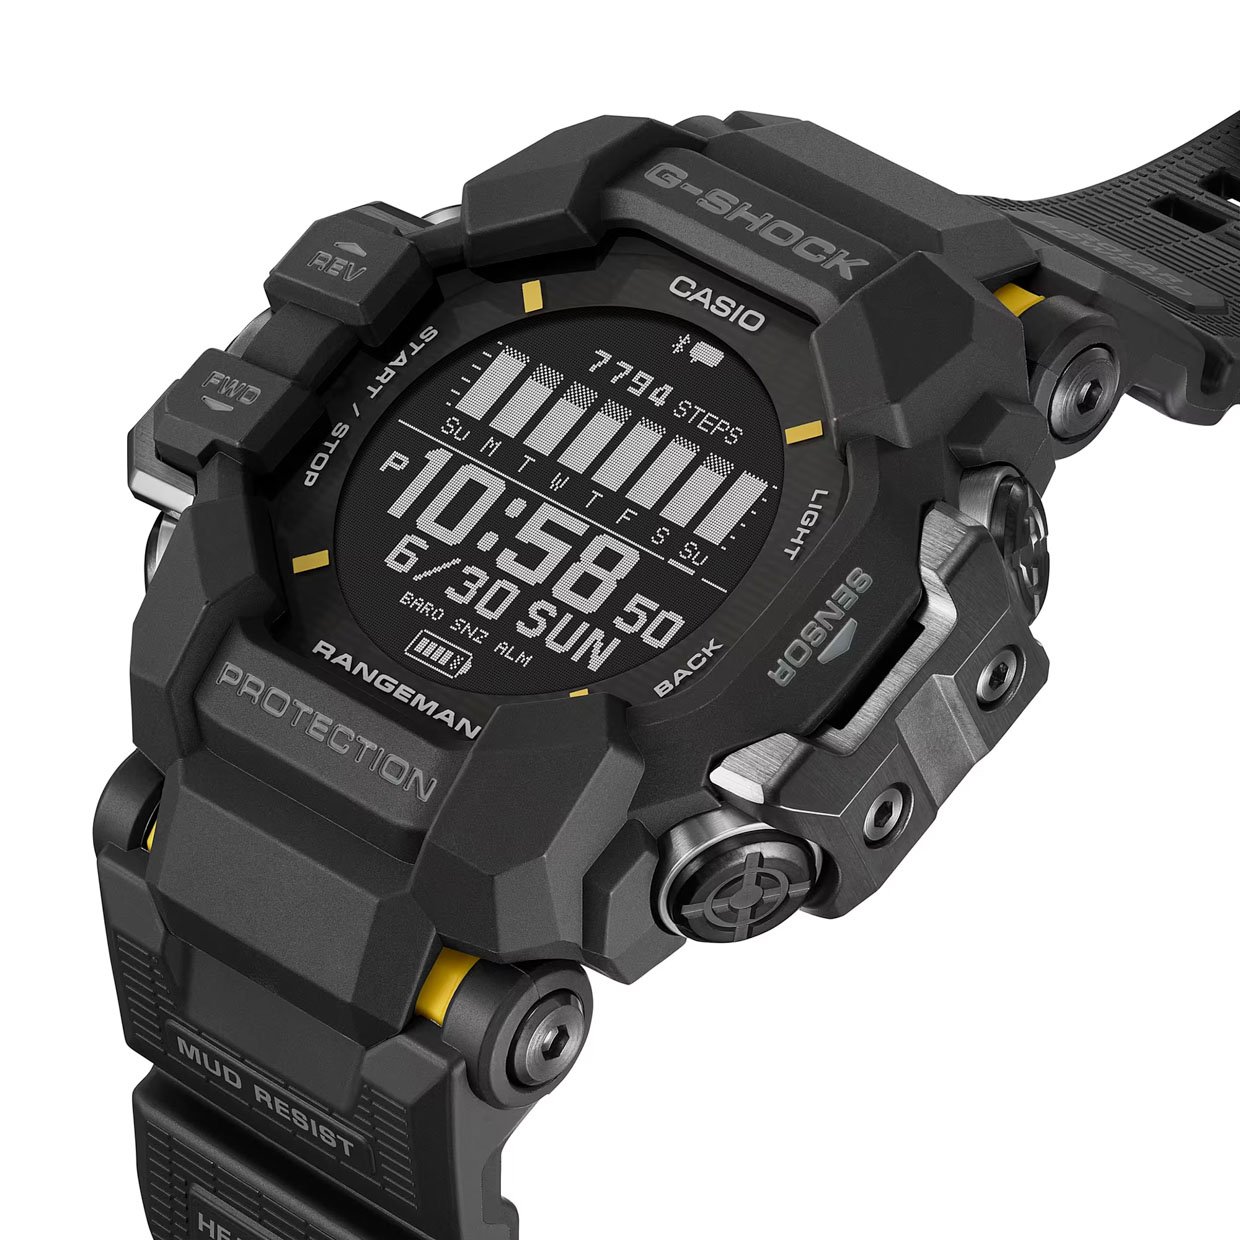 G-SHOCK Rangeman GPRH1000 Watch